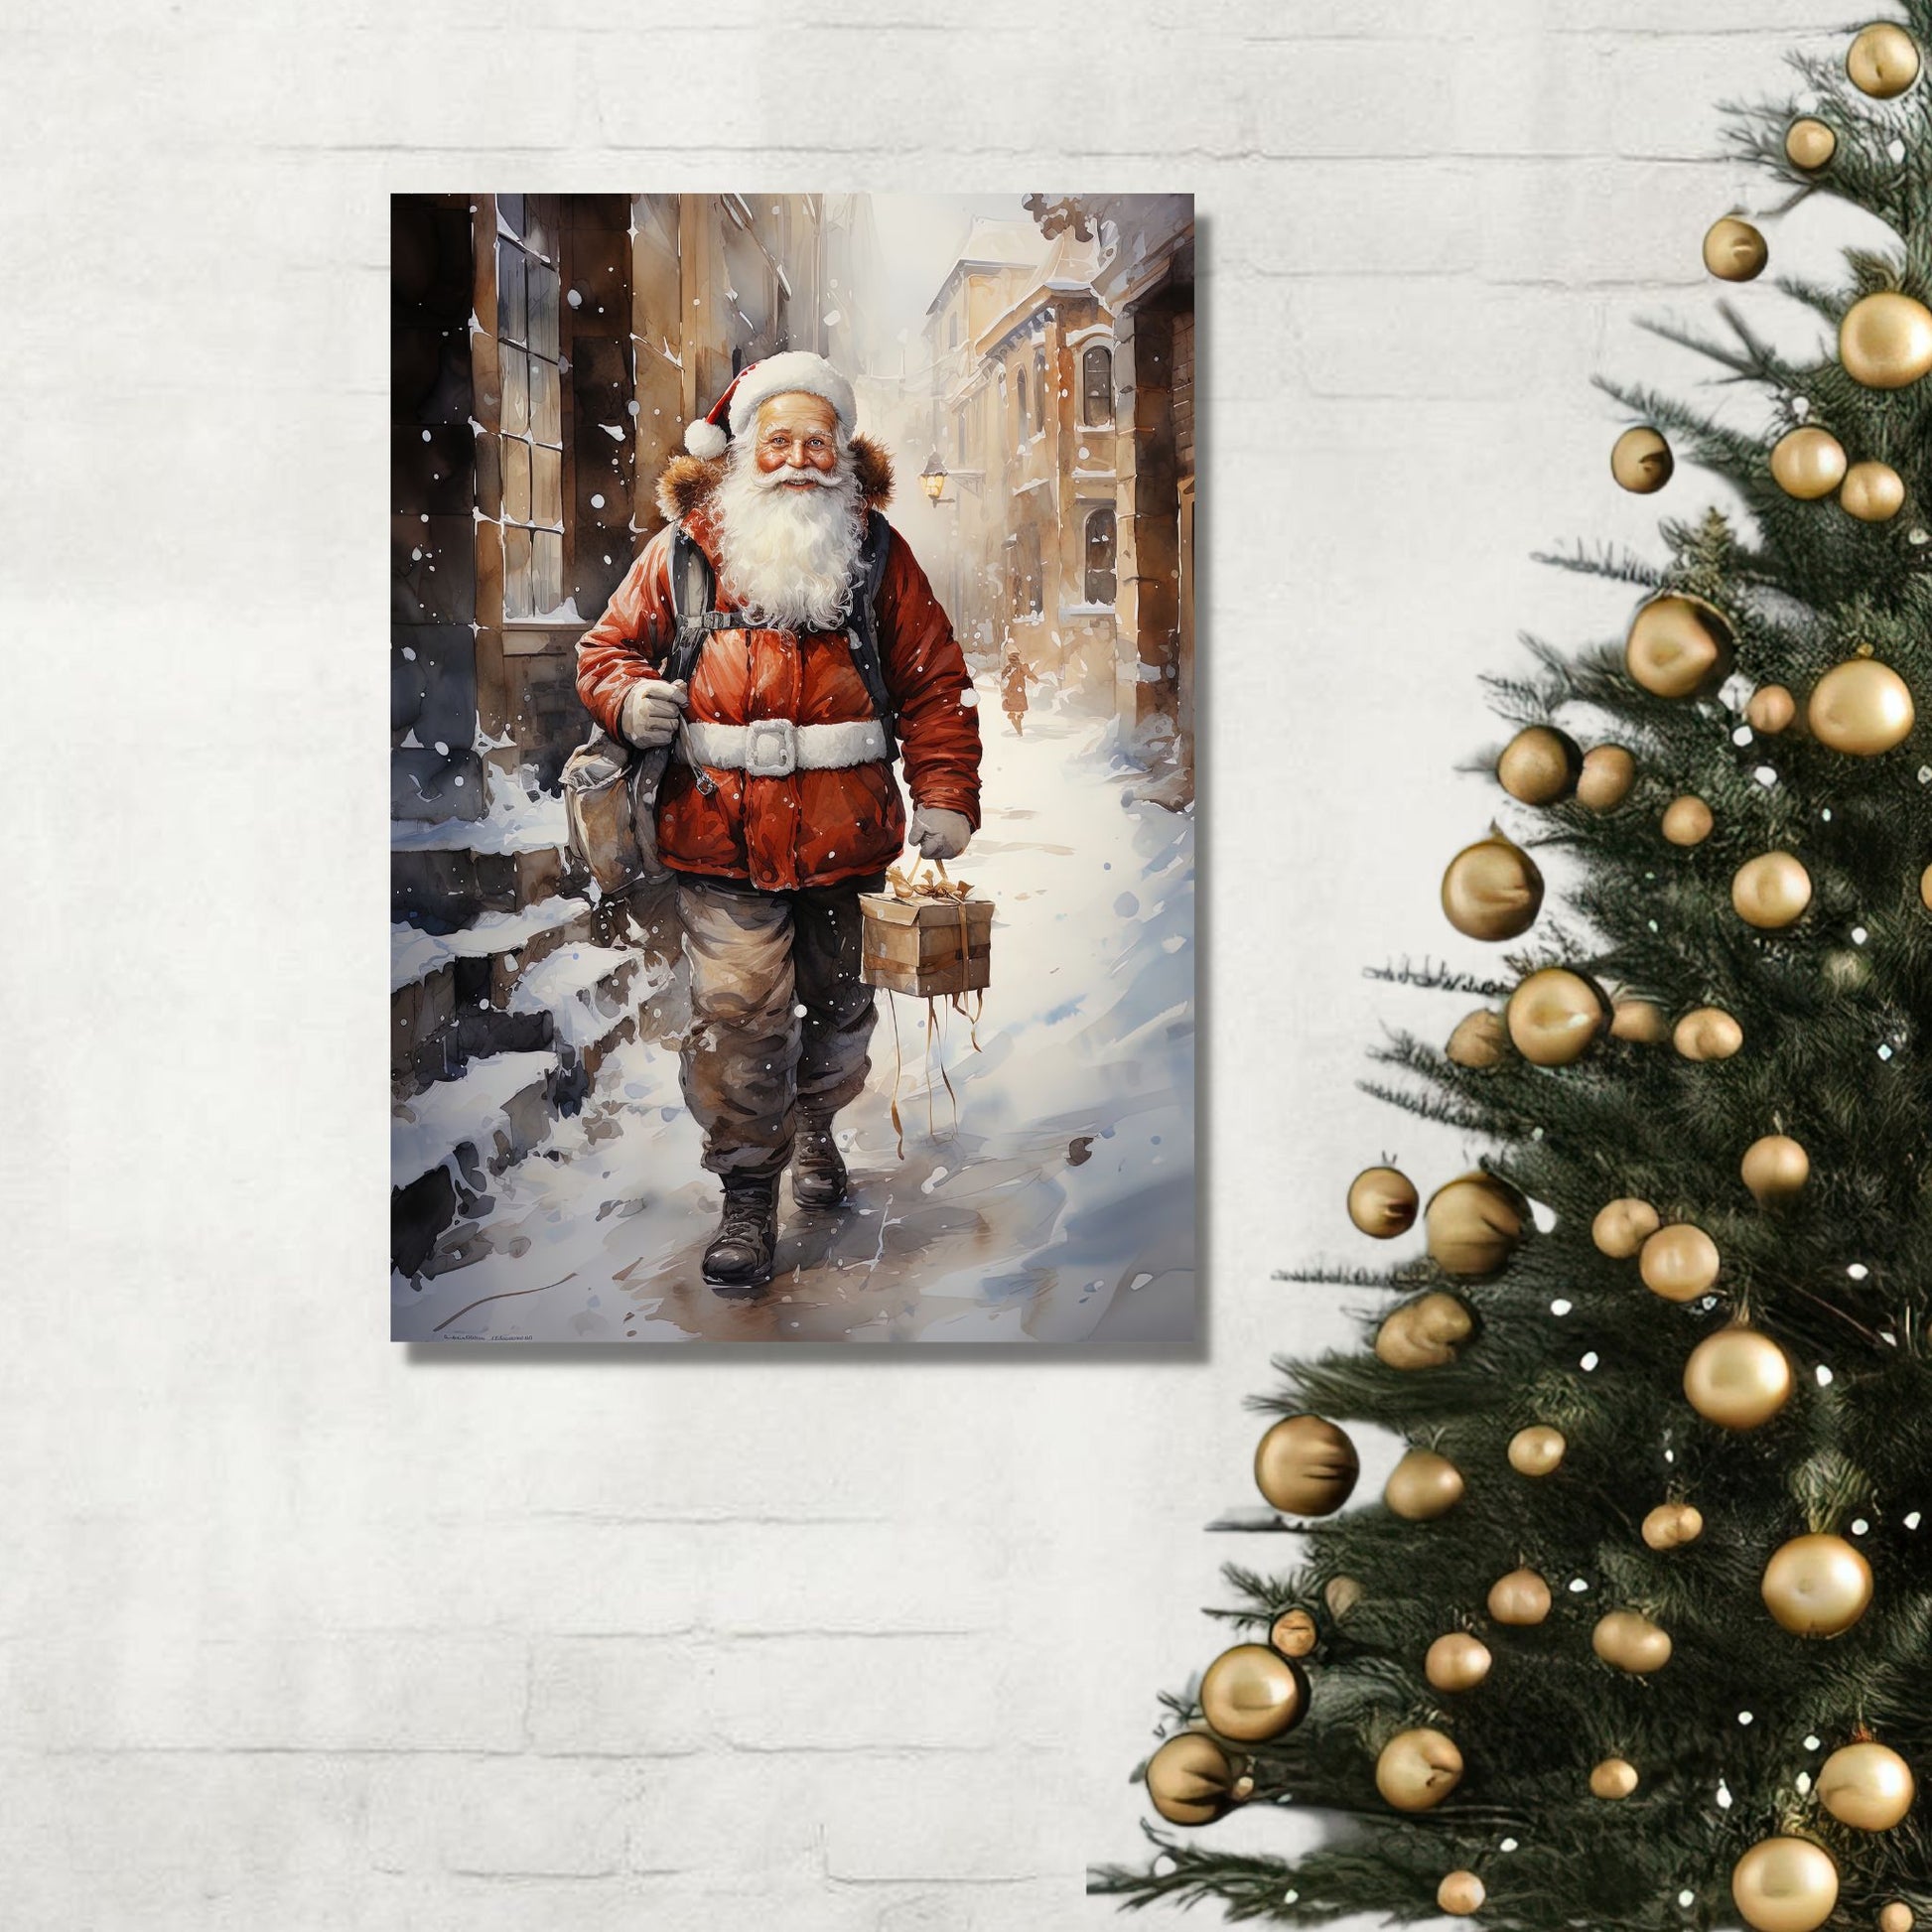 Grafisk motiv av julenisse som går på en snøkledd gate i en by. Nissen bærer med seg en julepakke og har en ryggsekk slengt over den ene skulderen. Han er kledd i en brun bukse, og har en rød jakke med hvitt belte rundt livet. Han har langt, hvitt skjegg, og på hodet har han en rød nisselue med hvit pelskant. Her henger motivet på veggen på lerret.